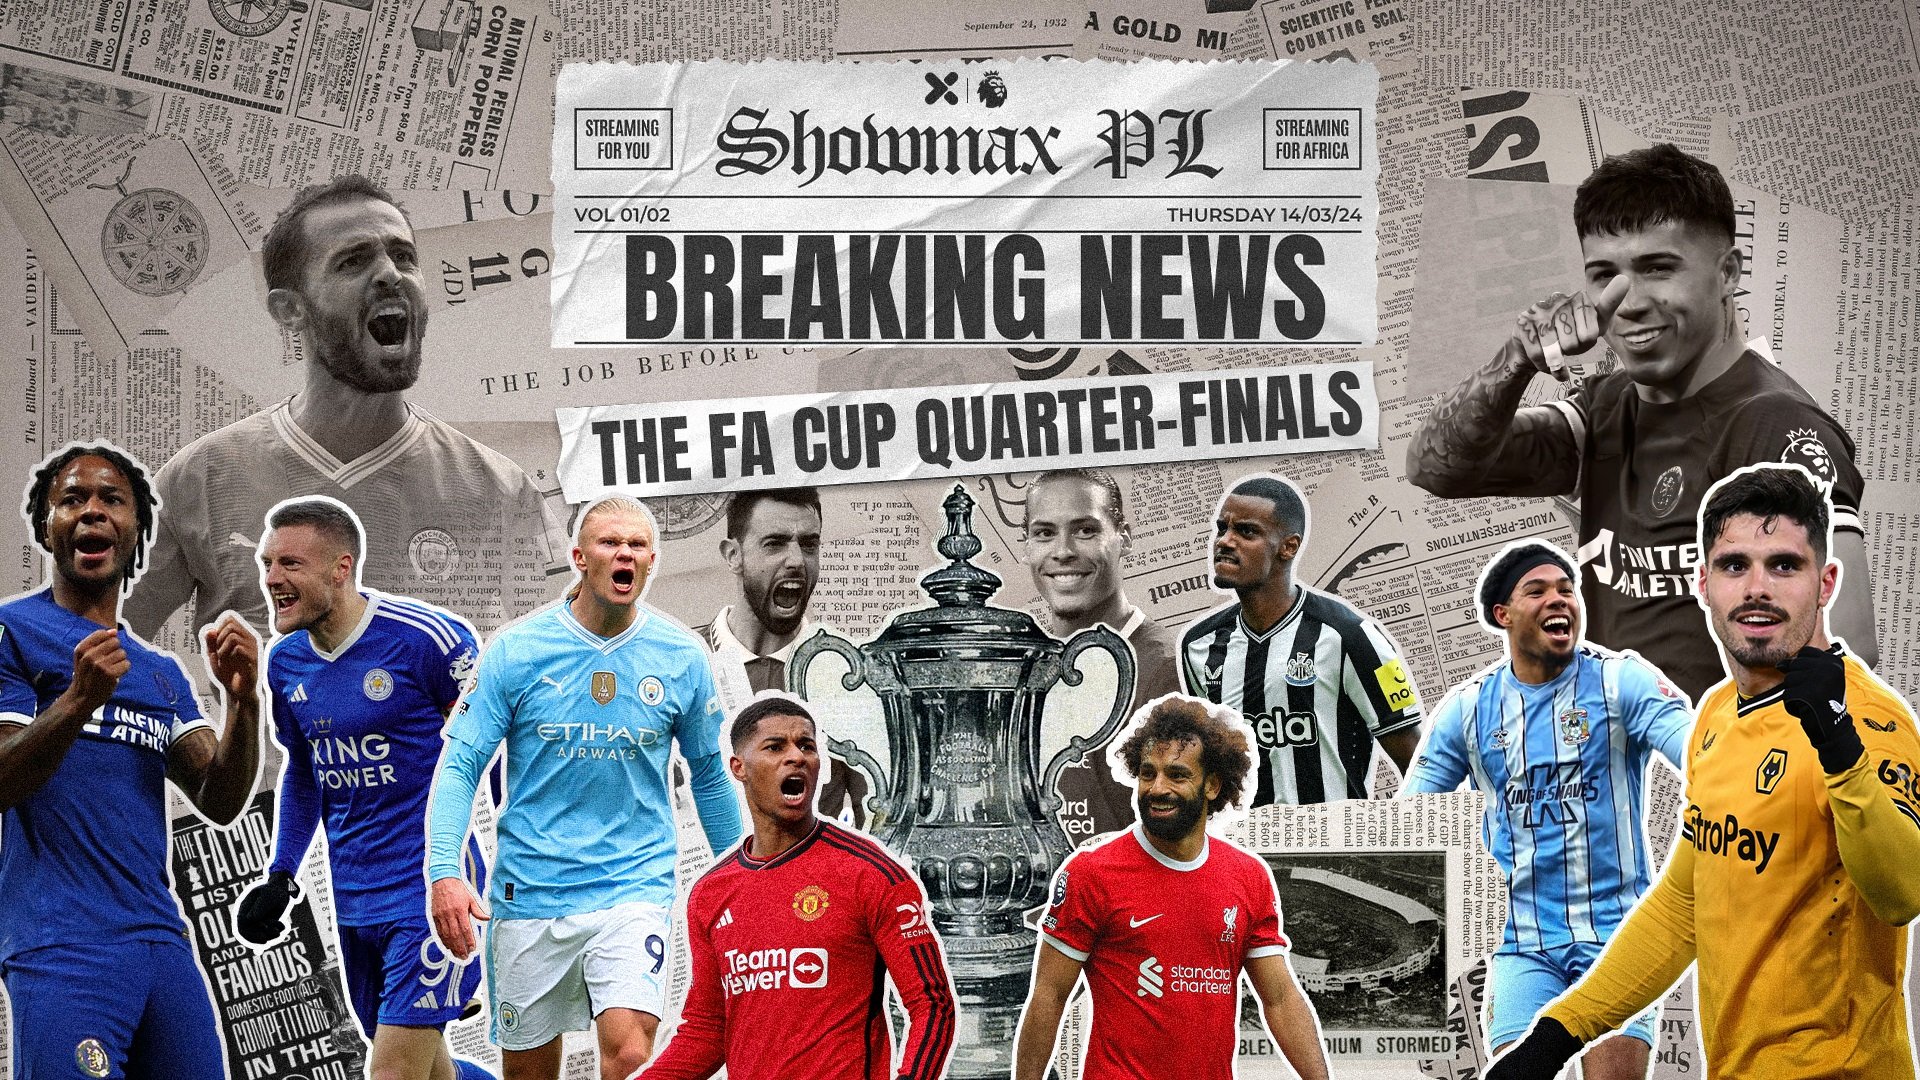 Stream the FA Cup Quarter Finals live on Saturday! Man City vs Newcastle United 